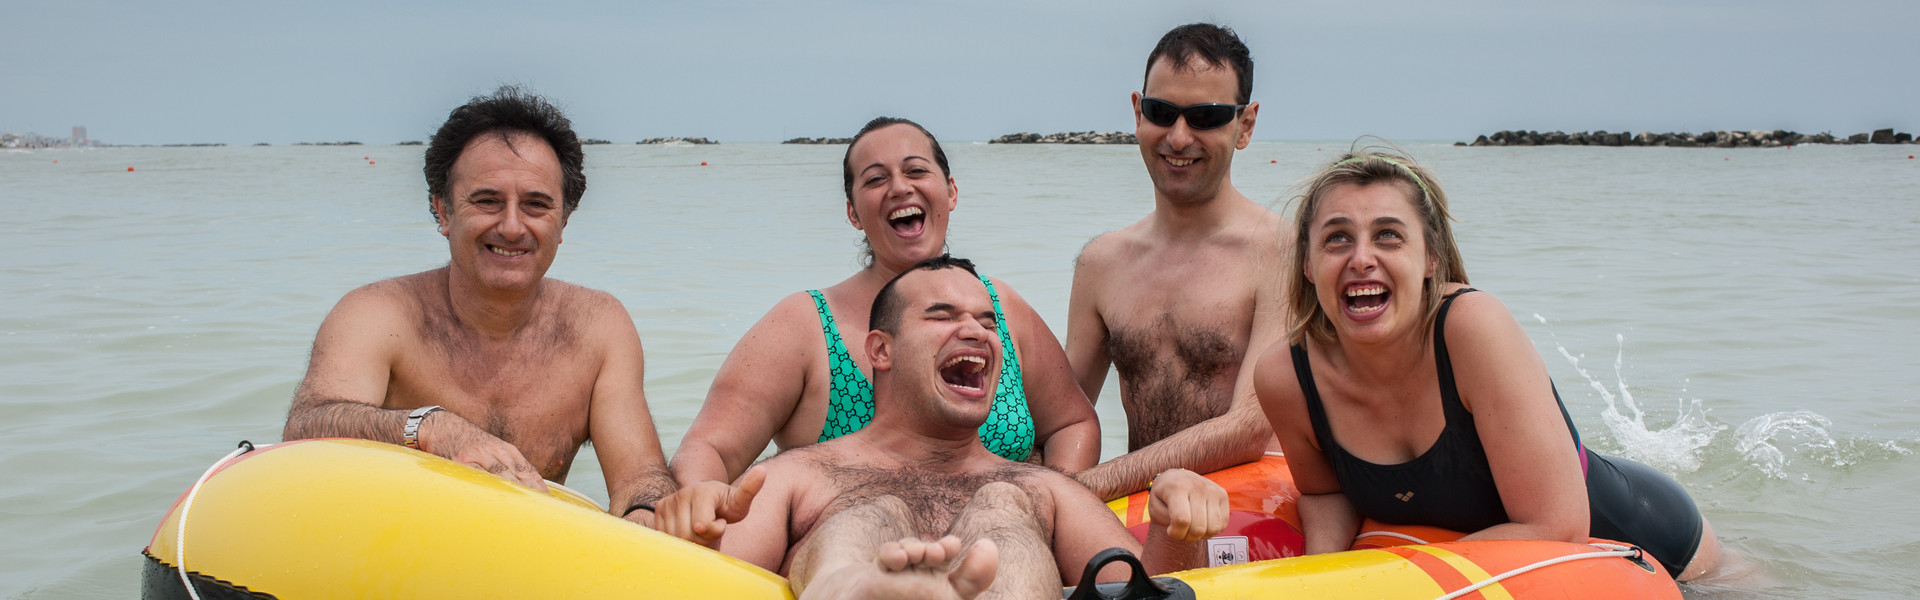 Soggiotni estivi al mare: un utente ride di gusto galleggiando su un gommone mentre volontari ed altri utenti, appoggiati intorno al gommone, ridono insieme a lui